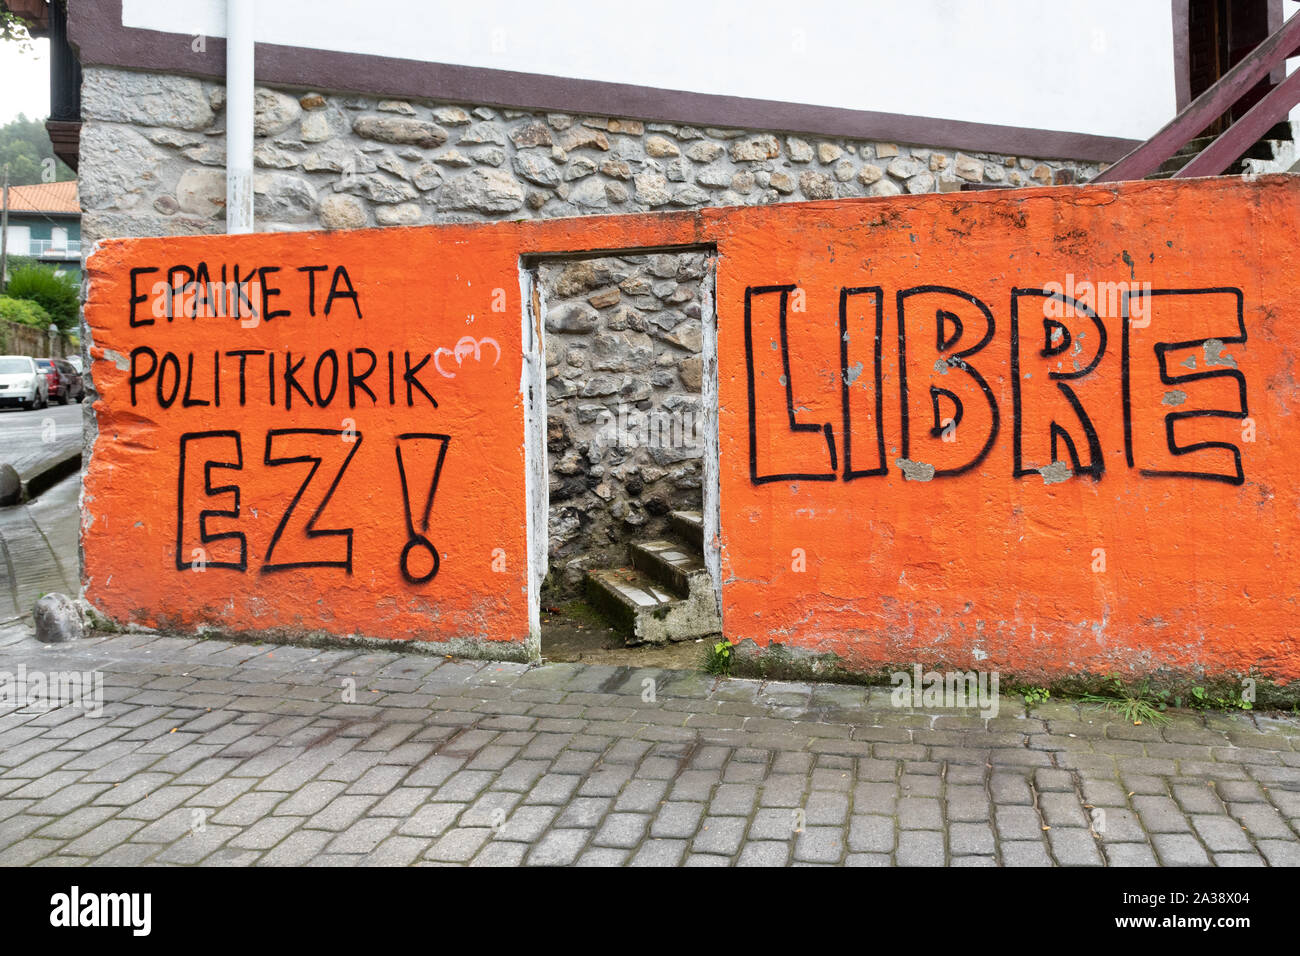 L'indépendance basque 'libre' graffiti dans le village Basque de Ea, Vizcaya, Espagne Banque D'Images